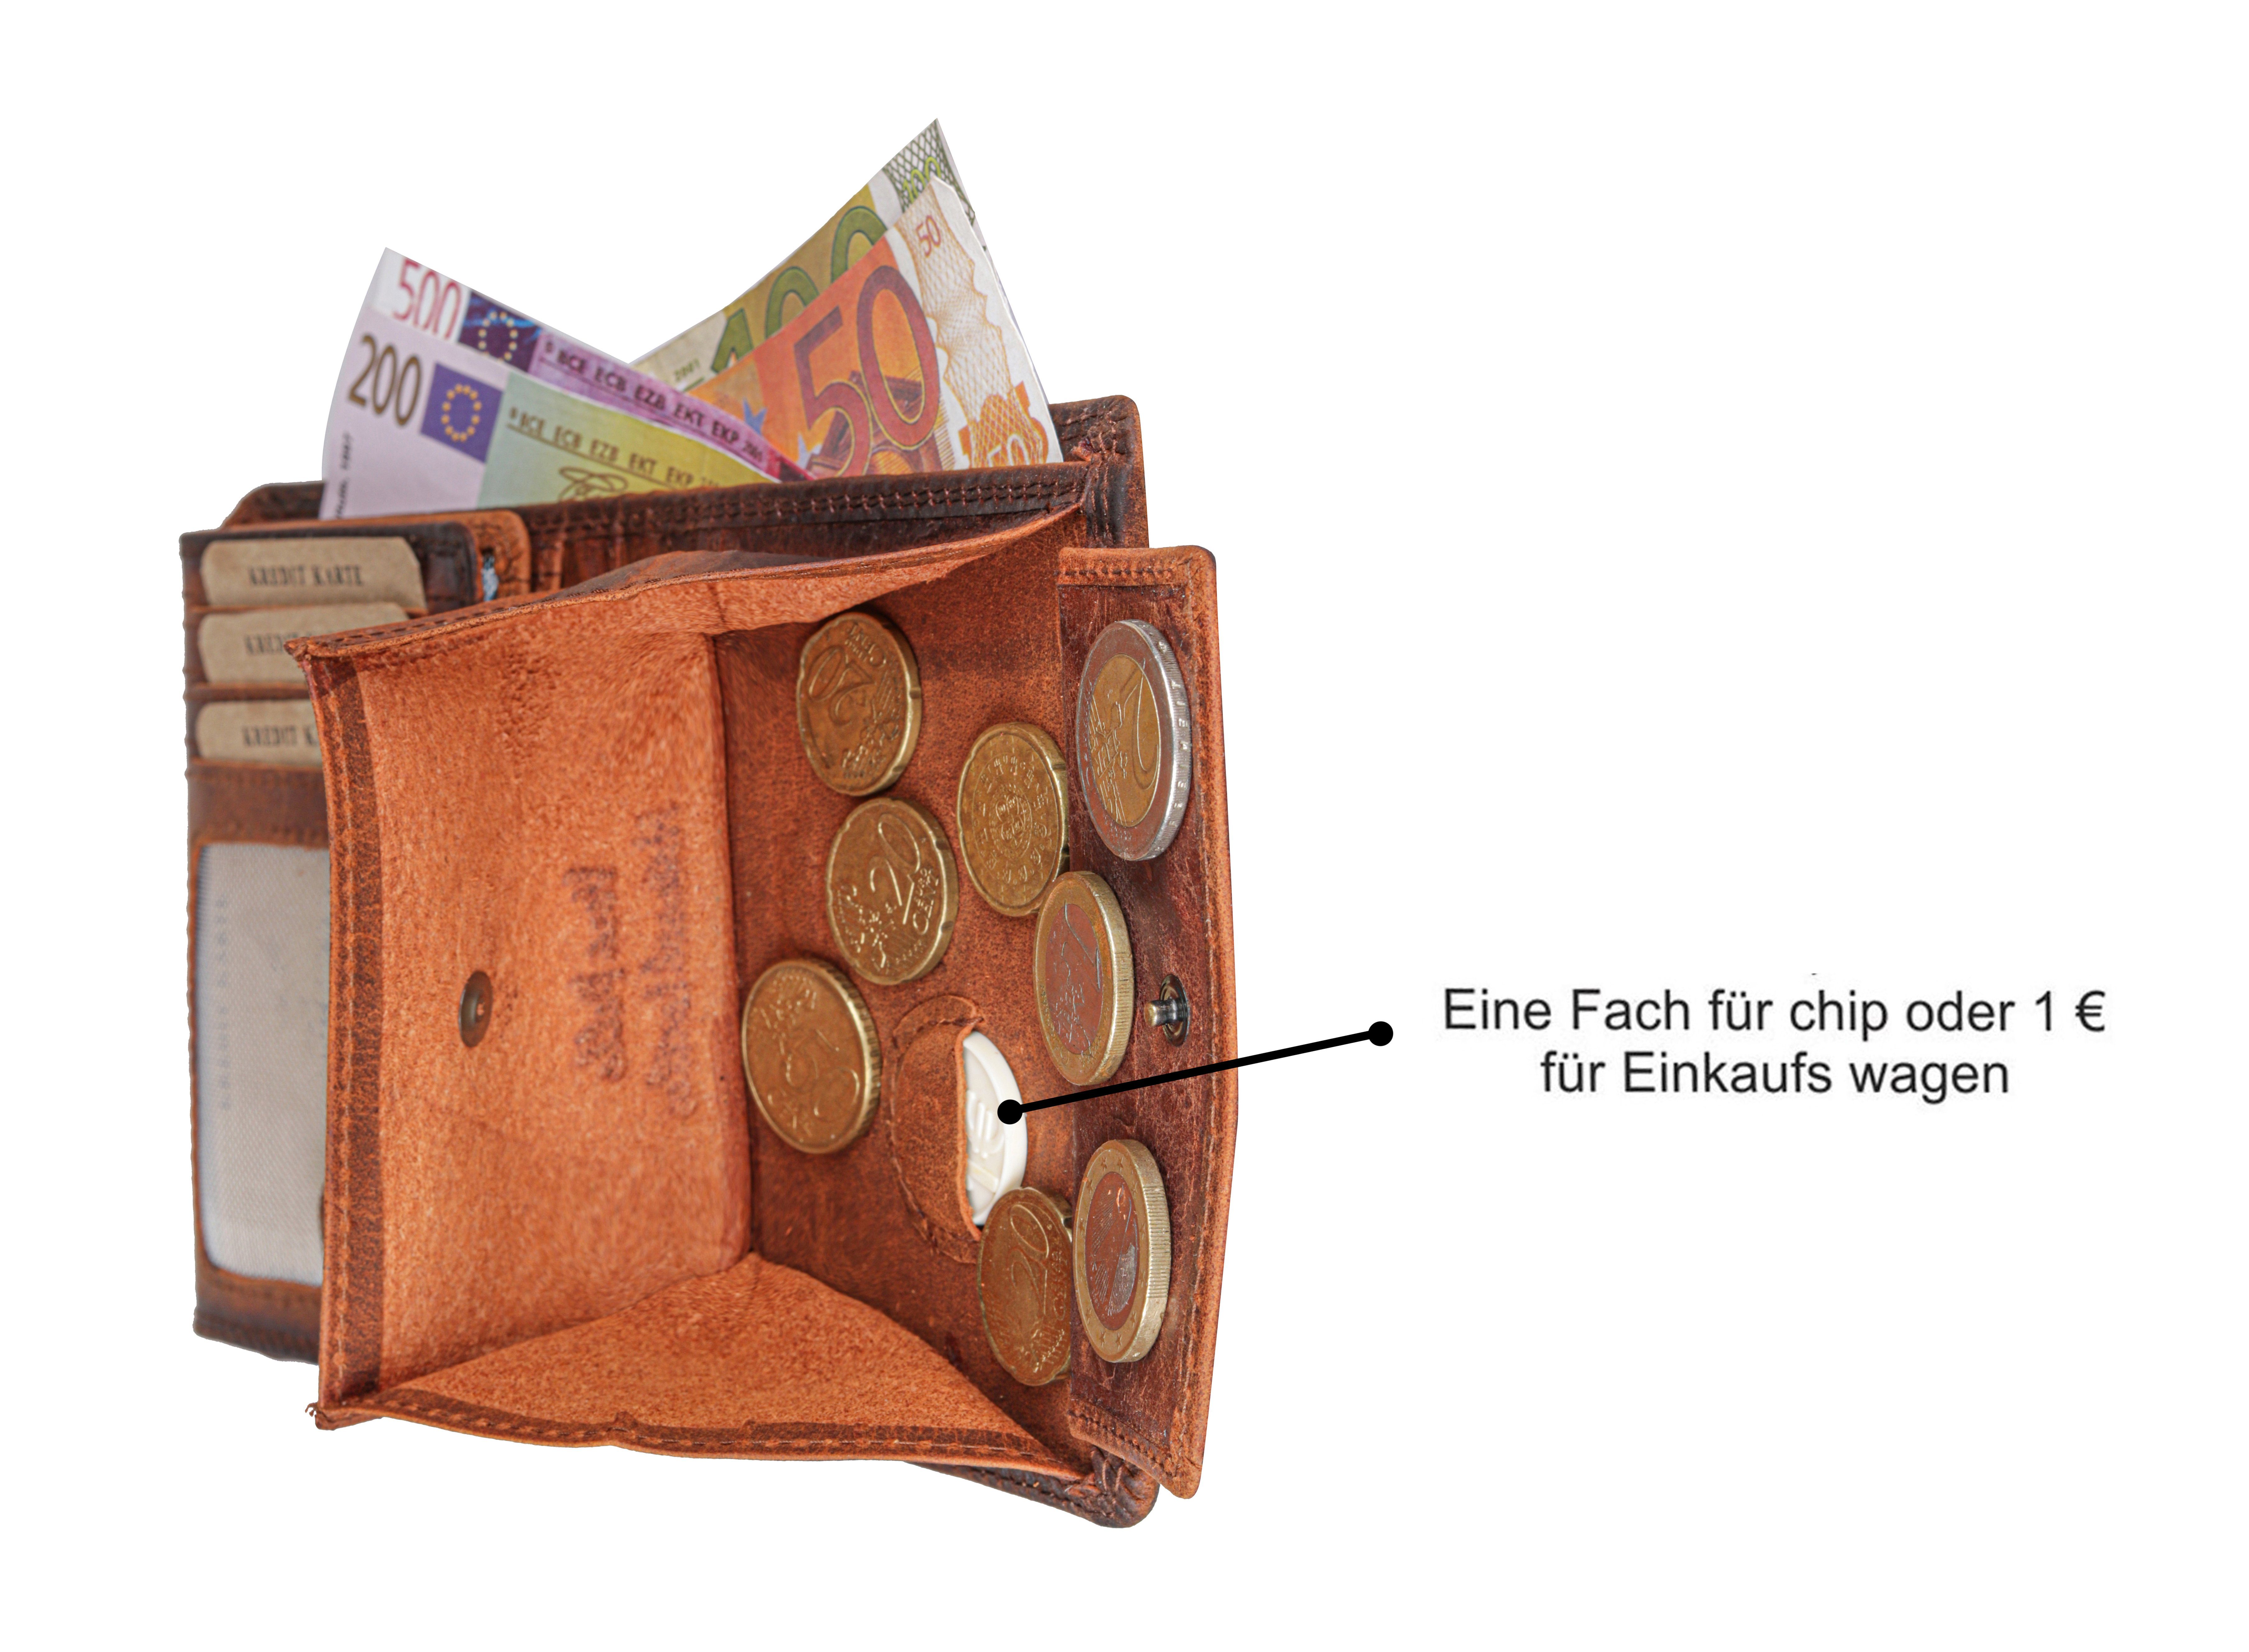 SHG Geldbörse Herren Leder Büffelleder mit Lederbörse Schutz Börse RFID Portemonnaie, Männerbörse Brieftasche Münzfach